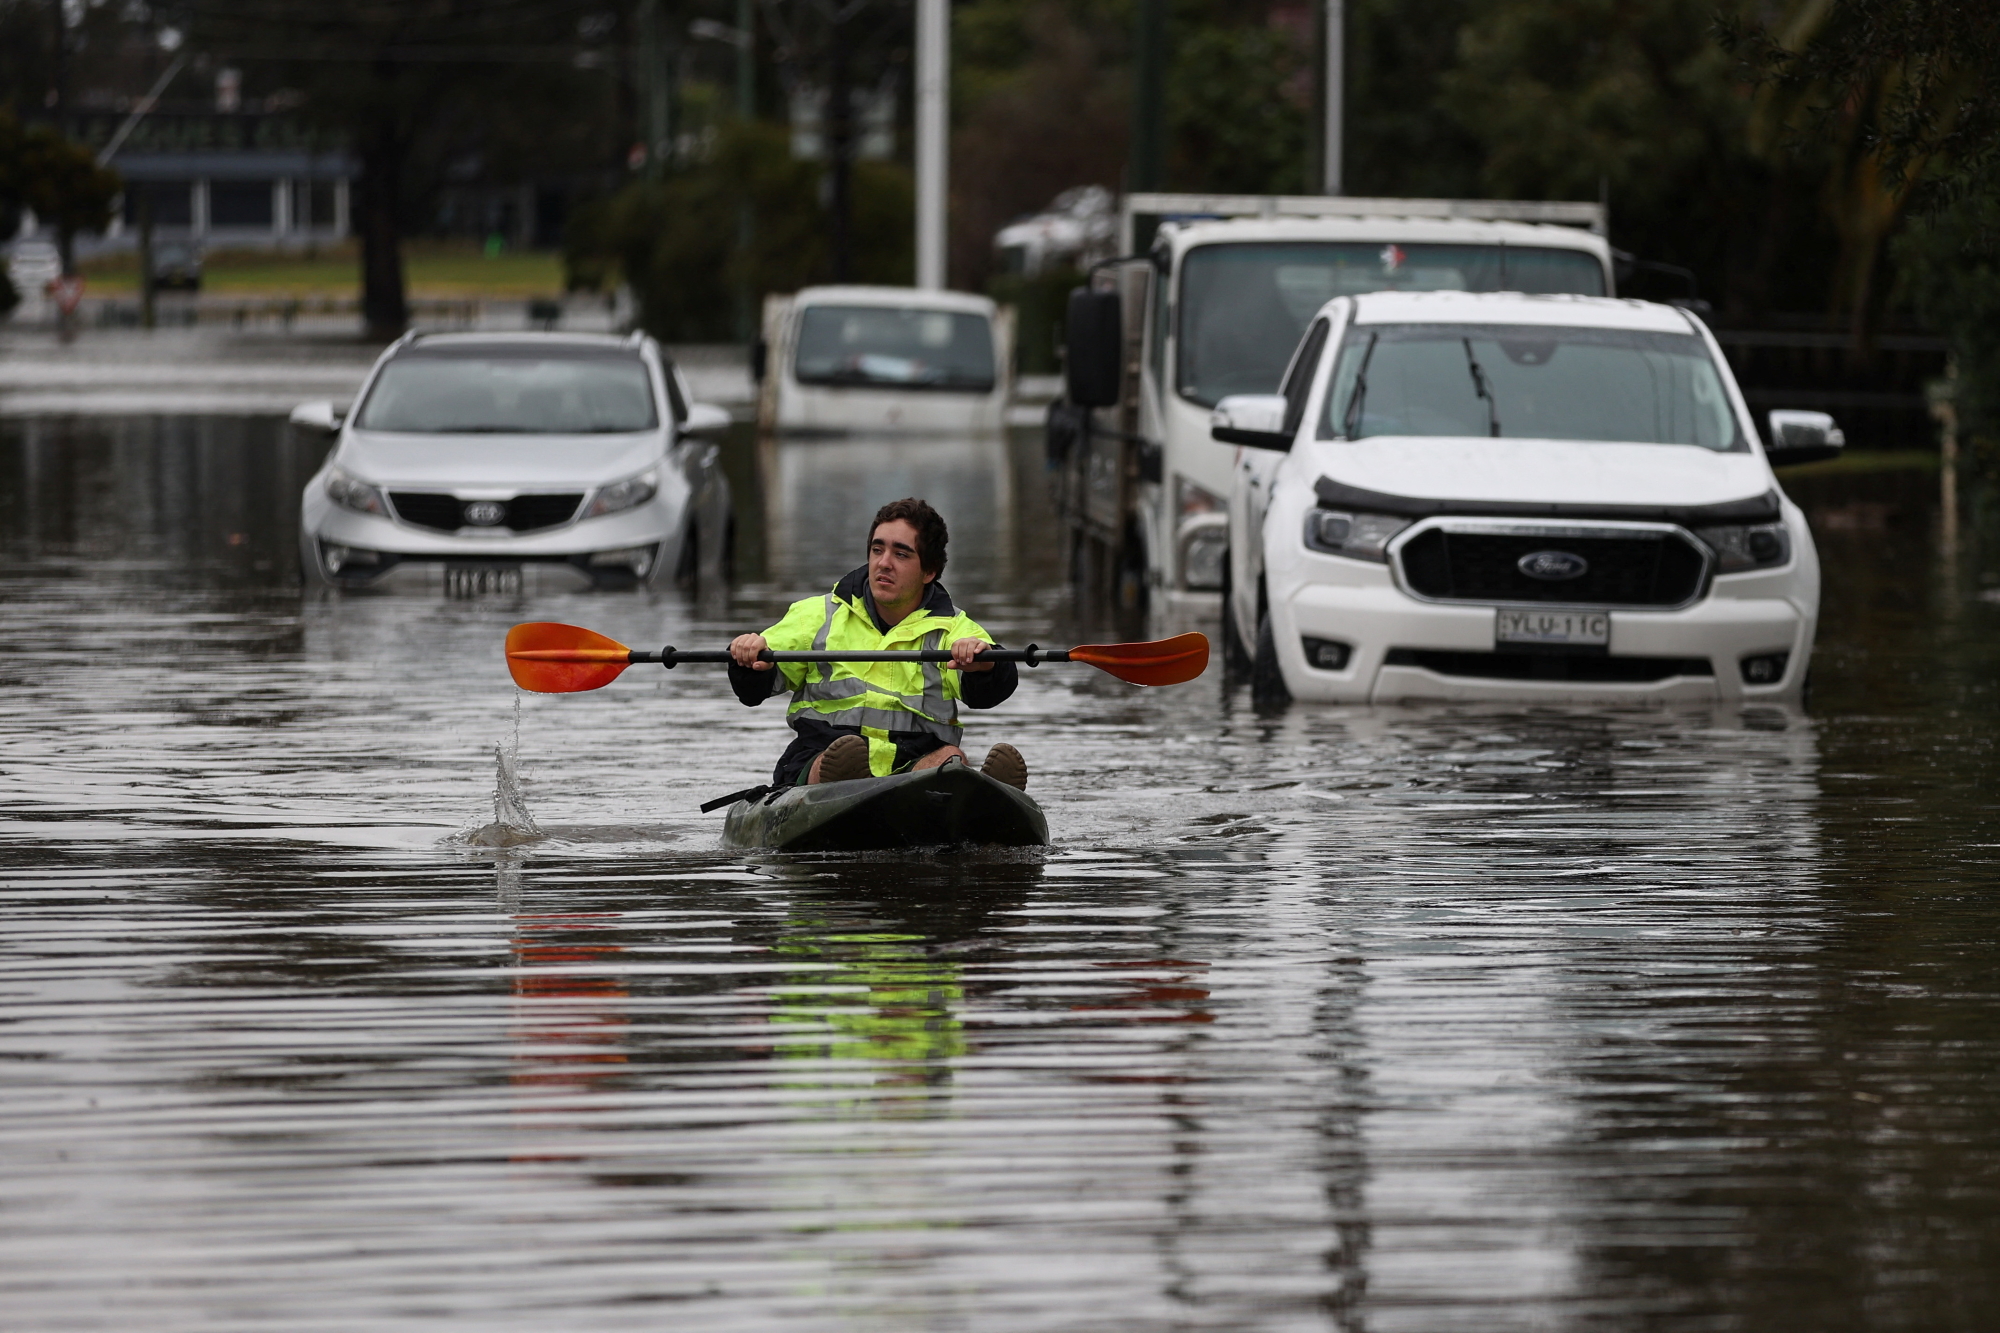 Αυστραλία: Σφοδρές βροχοπτώσεις για τέταρτη ημέρα – Πλημμύρες, εκκενώσεις και διακοπές ρεύματος